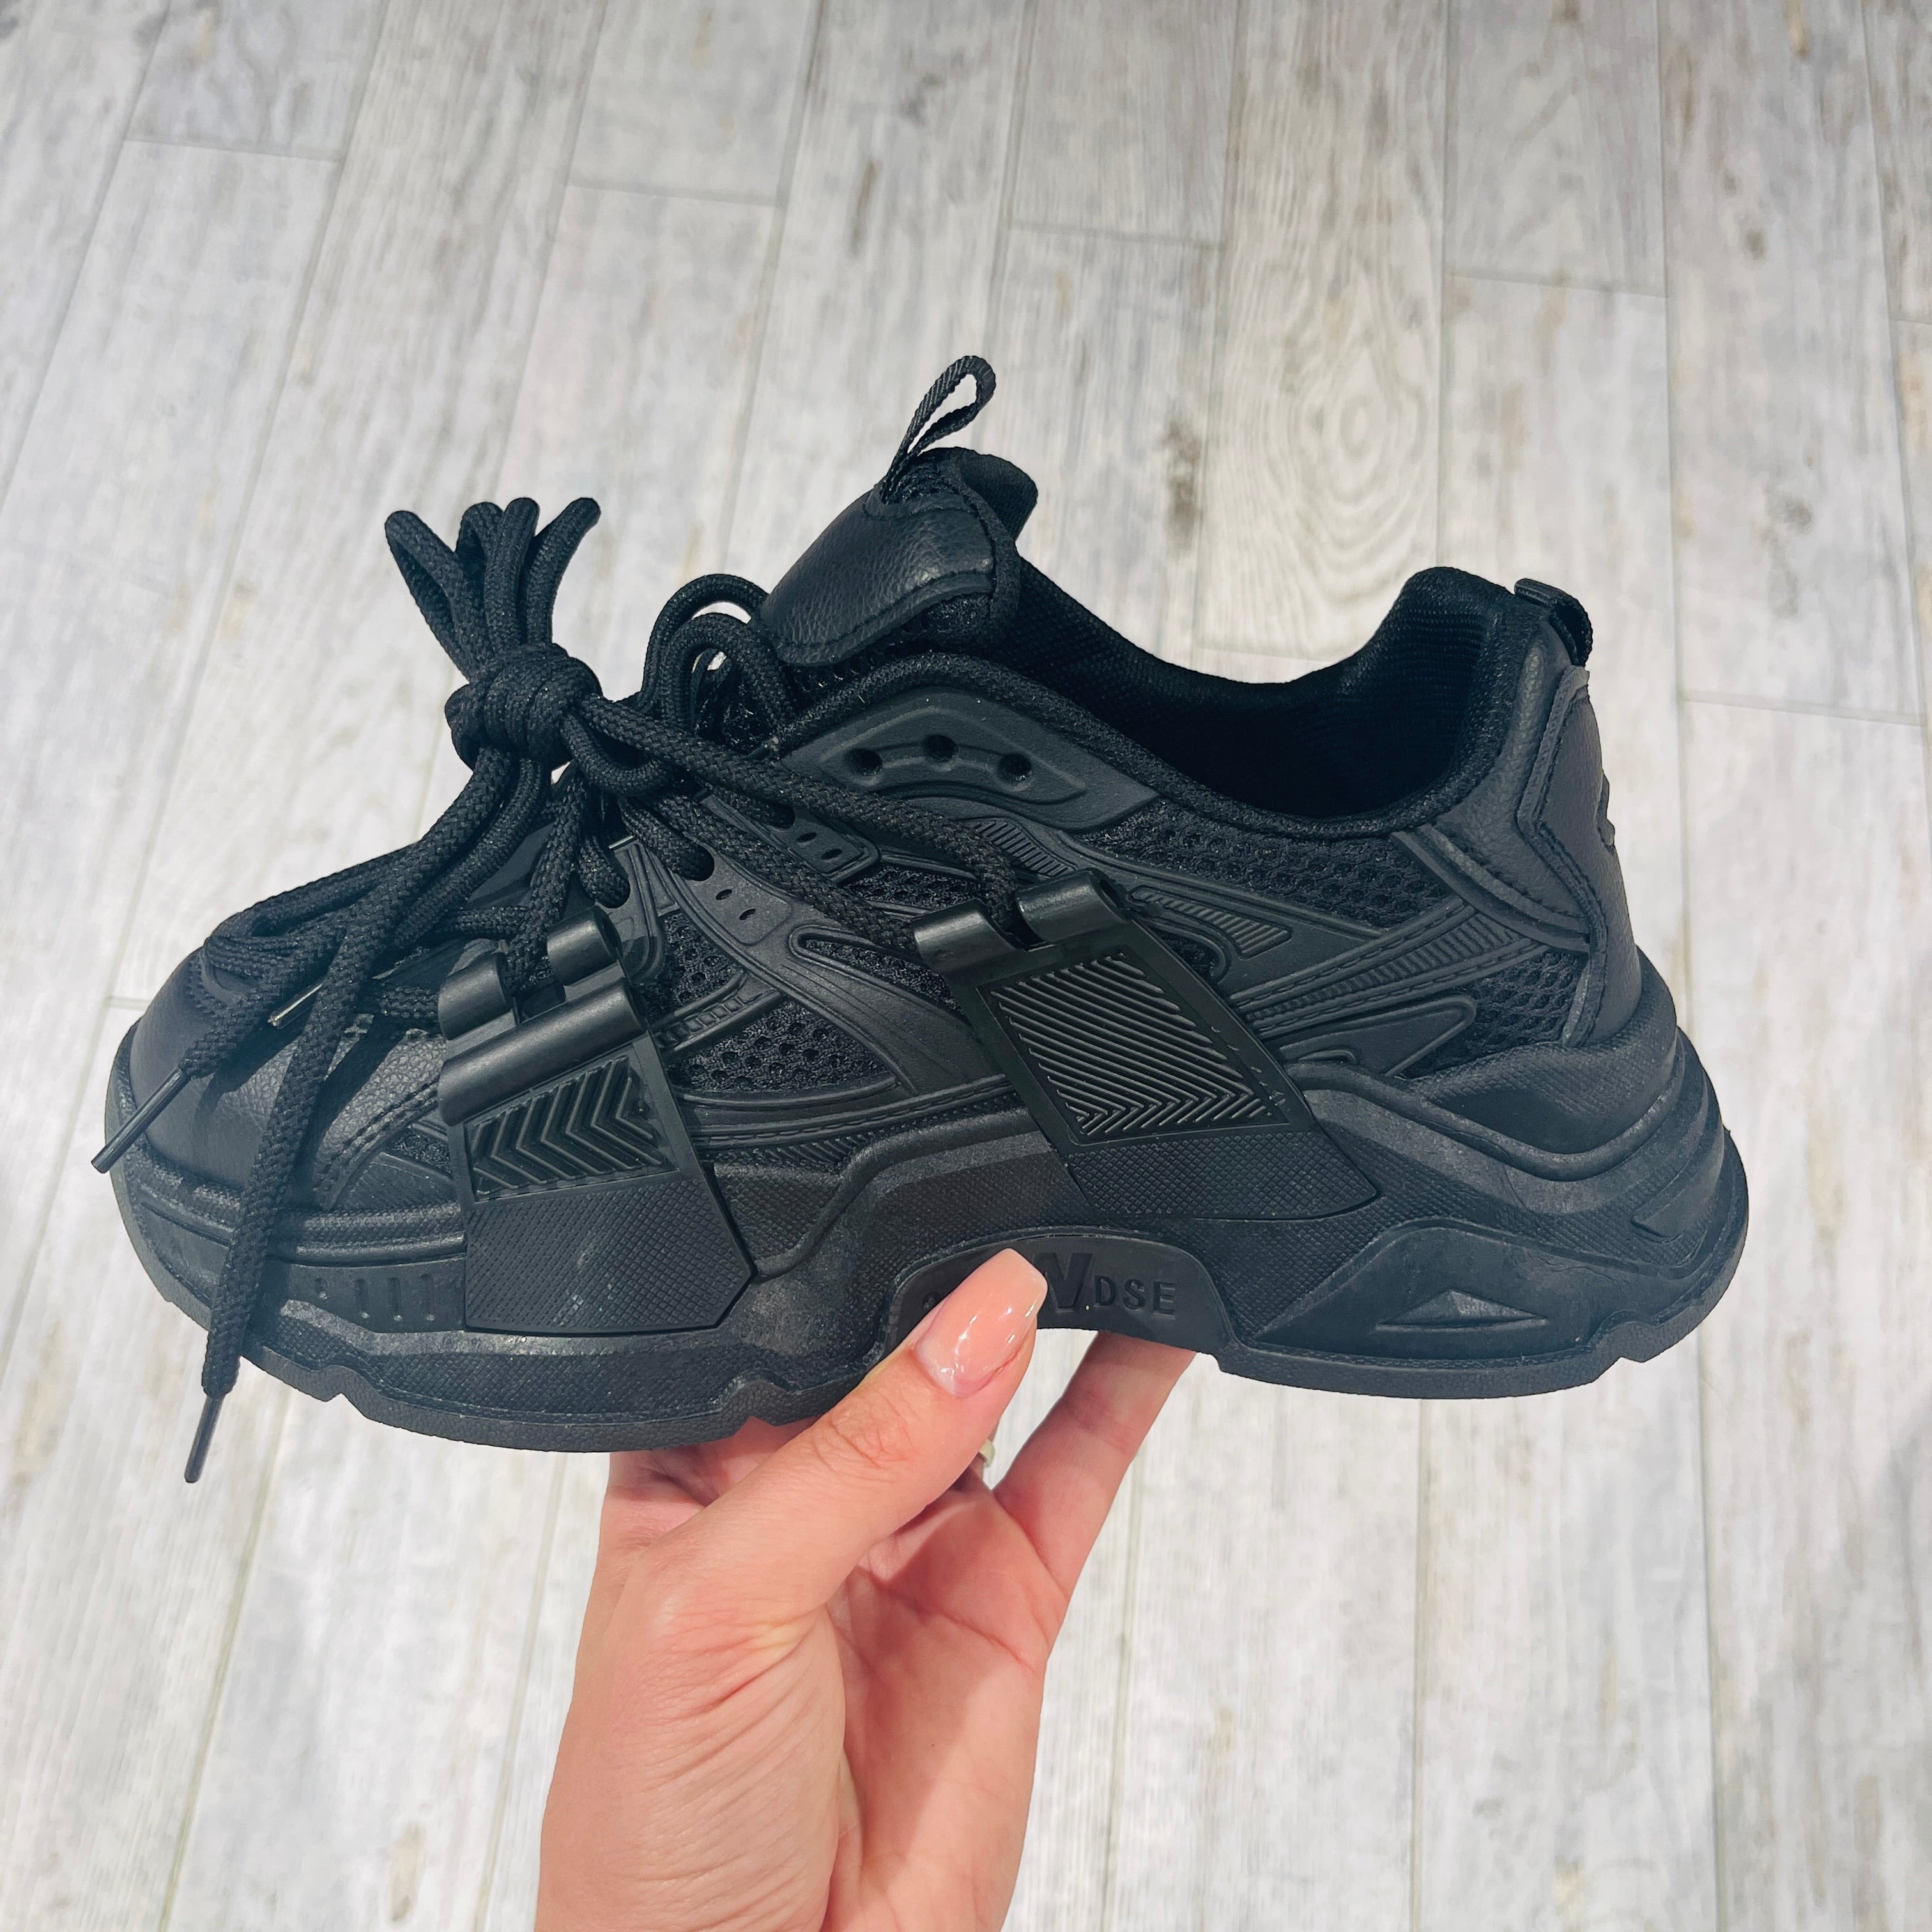 Double Black Sneaker